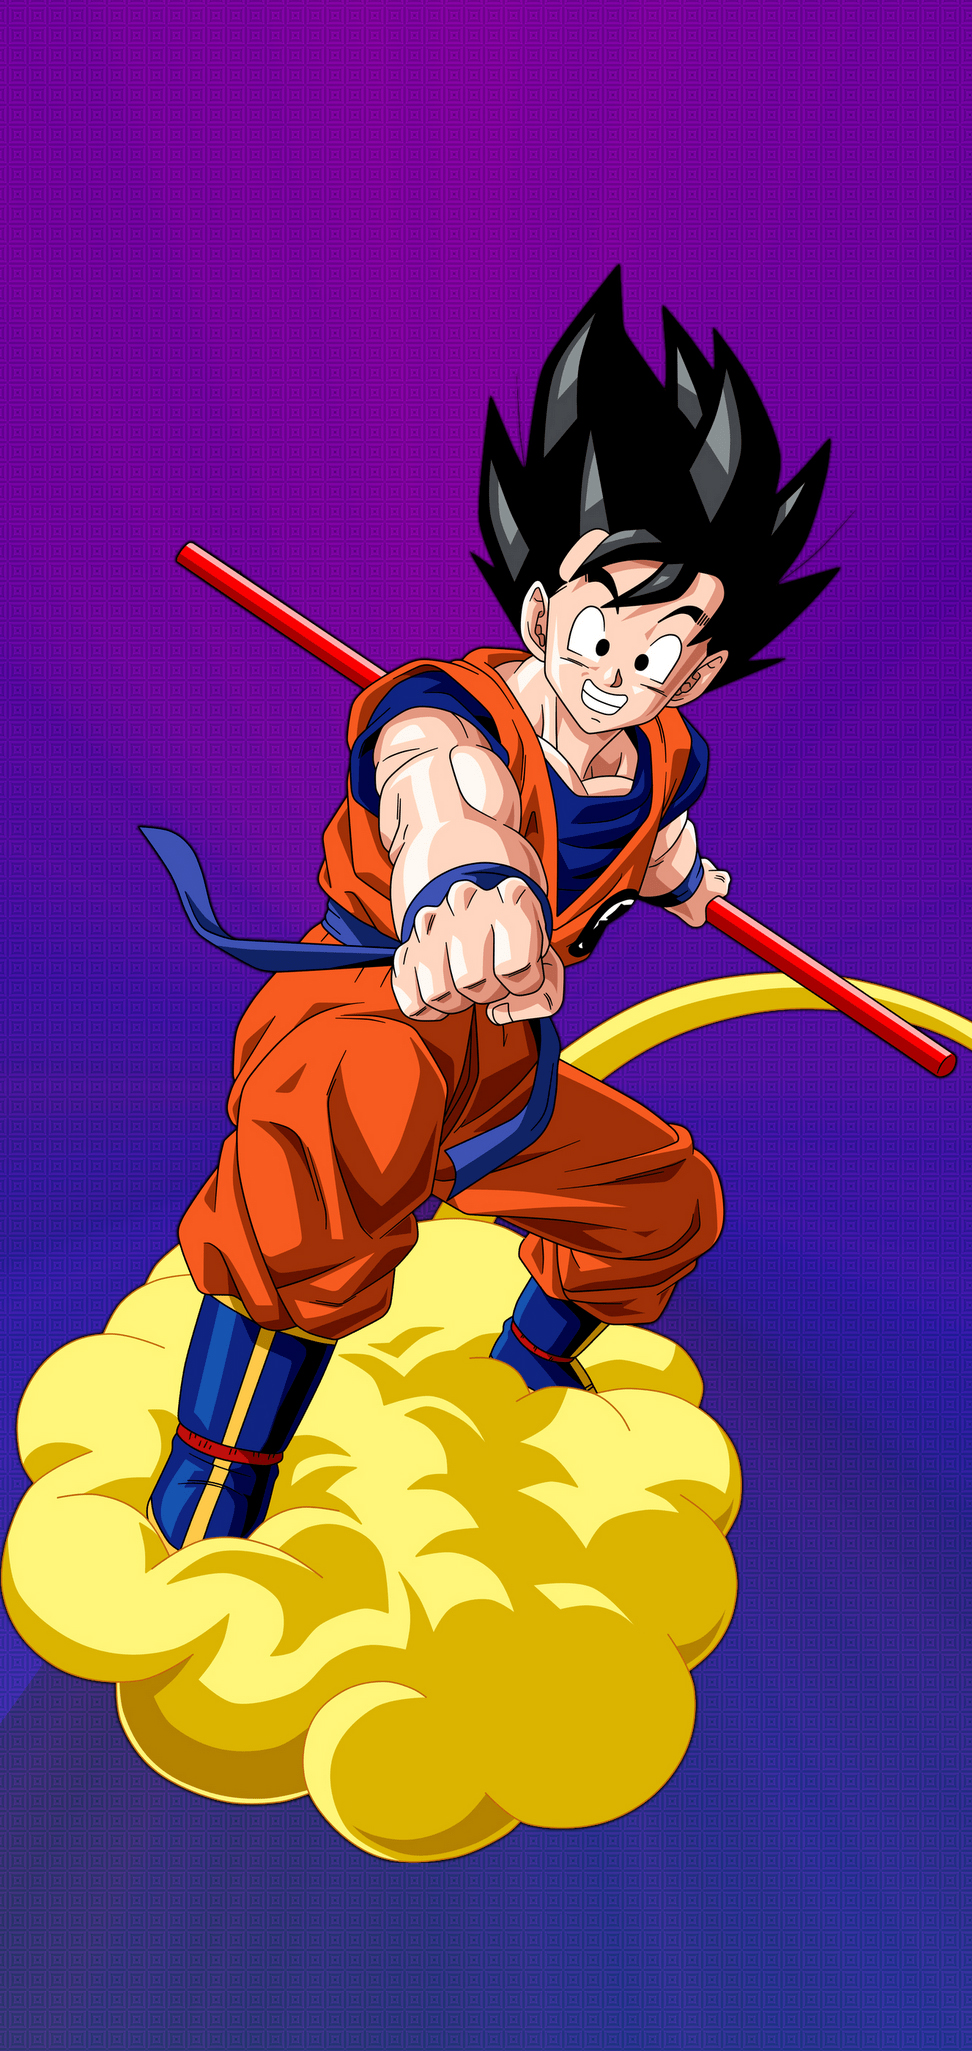 Wallpaper Goku Anime Amoled Goku Amoled Jiren Background  Download  Free Image